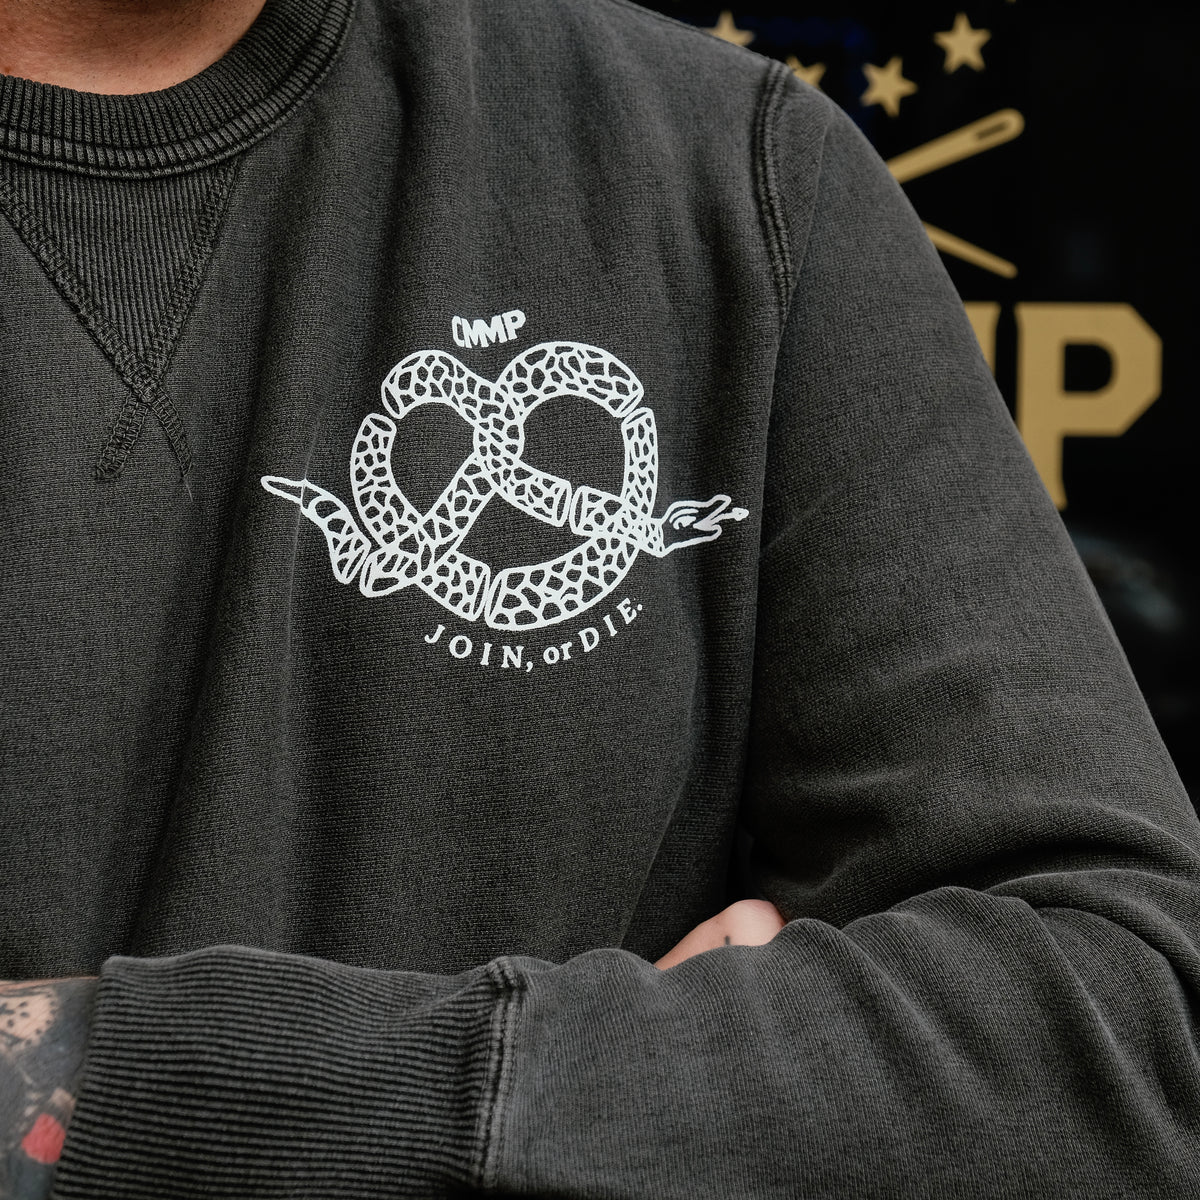 Philly Pretzel Snake Crew Sweatshirt 100% Cotton